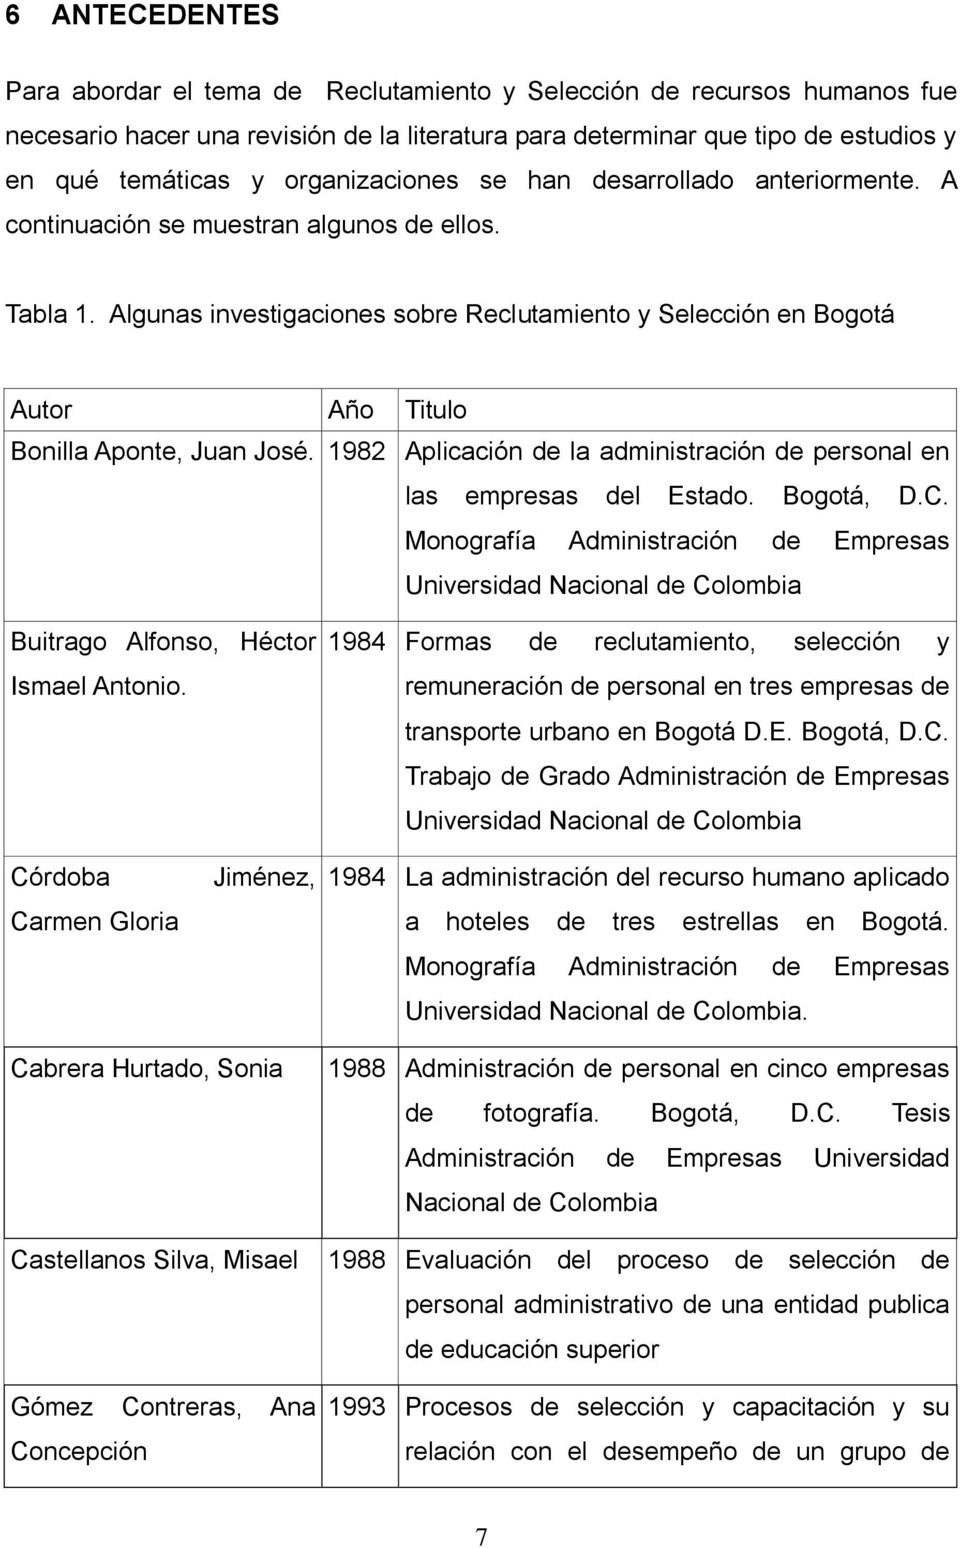 Algunas investigaciones sobre Reclutamiento y Selección en Bogotá Autor Año Titulo Bonilla Aponte, Juan José. 1982 Aplicación de la administración de personal en las empresas del Estado. Bogotá, D.C.